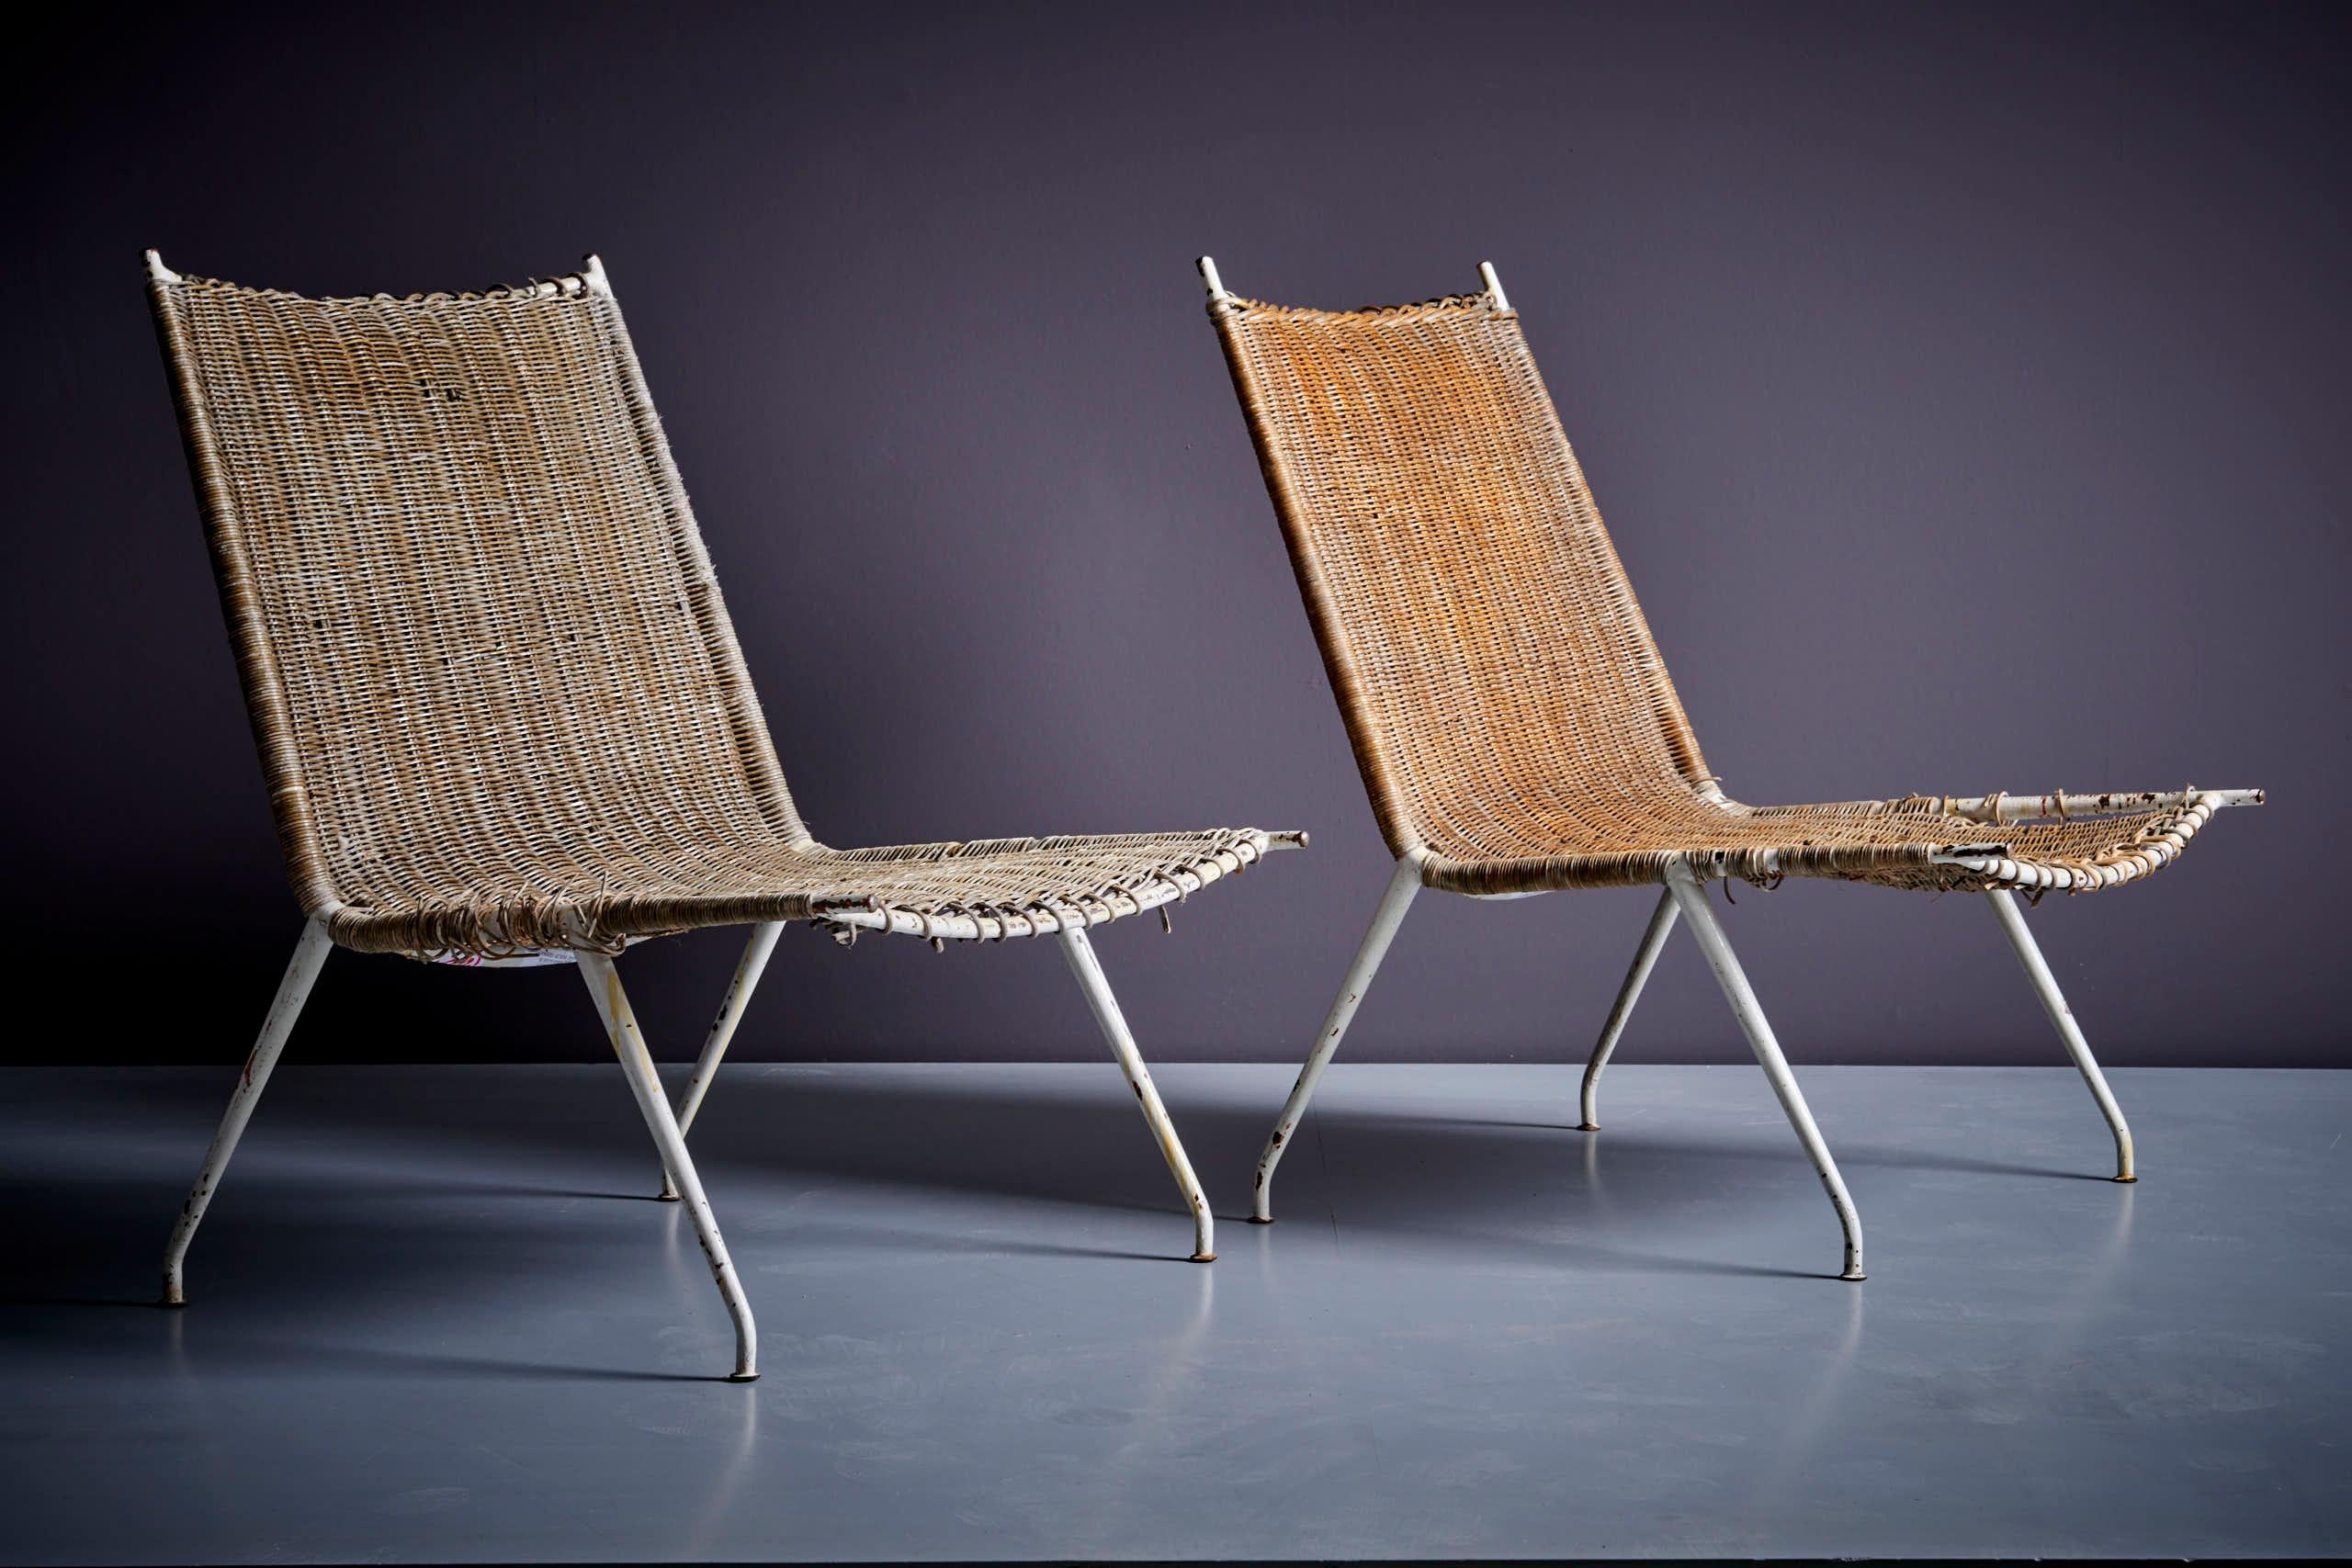 Paire de chaises longues Raoul Guys pour Airborne, France - années 1950, en rotin et métal. Nous proposons des services de restauration et de rembourrage dans notre propre atelier. Demandez un devis
